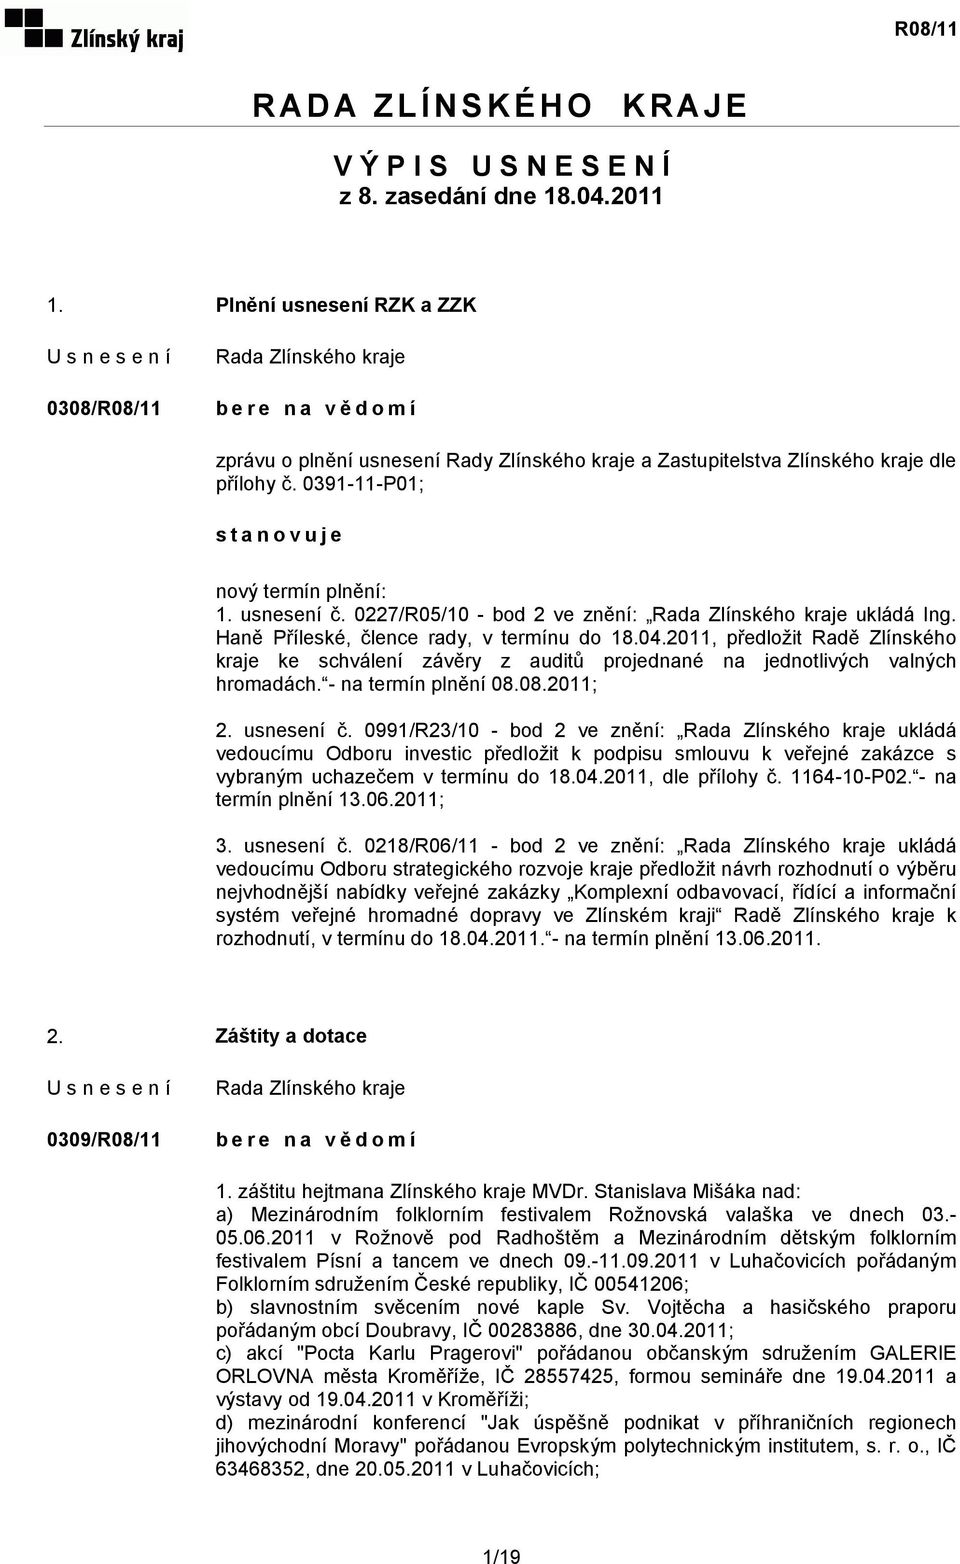 0227/R05/10 - bod 2 ve znění: ukládá Ing. Haně Příleské, člence rady, v termínu do 18.04.2011, předložit Radě Zlínského kraje ke schválení závěry z auditů projednané na jednotlivých valných hromadách.